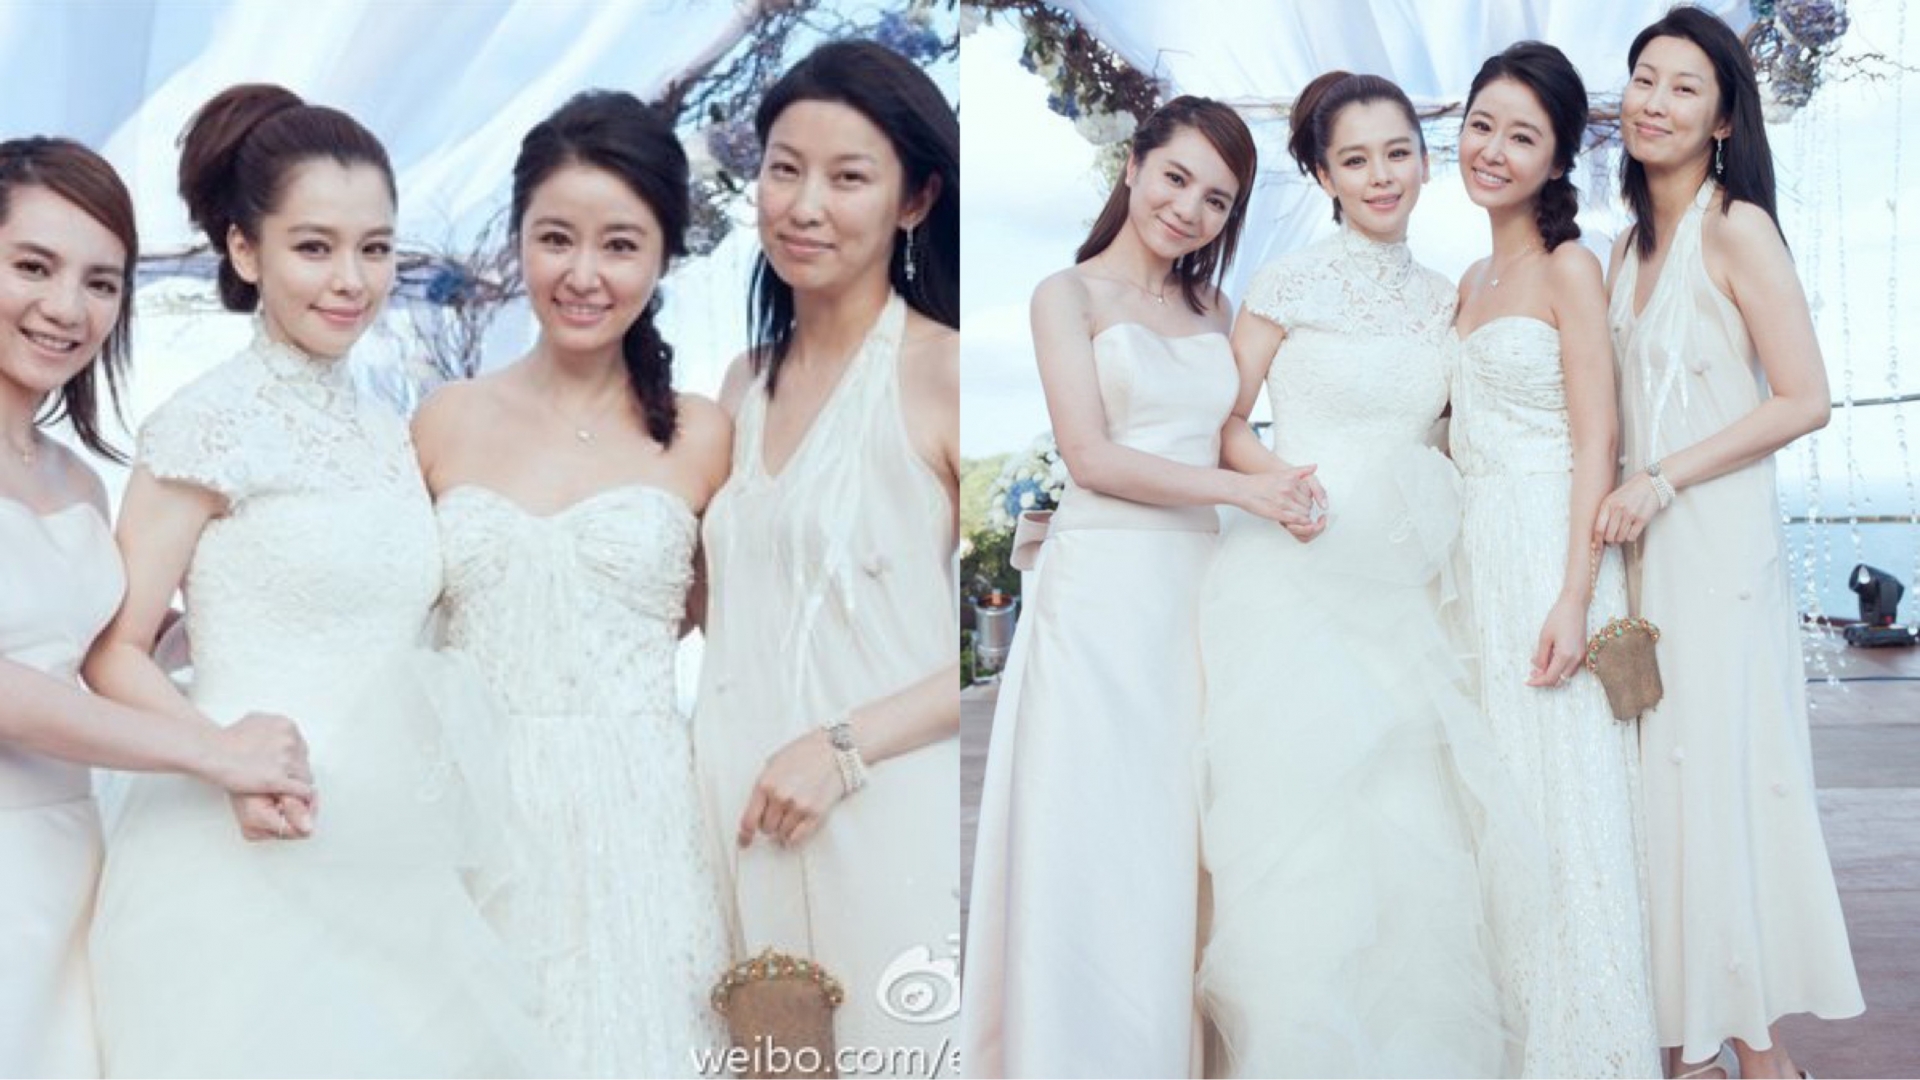 Lâm Tâm Như cũng từng là 'tội đồ' khi làm phù dâu trong đám cưới của nữ diễn viên Từ Nhược Tuyên. Diện chiếc váy quây màu trắng lại đứng ở trung tâm, nhiều người lầm tưởng cô mới là nhân vật chính.